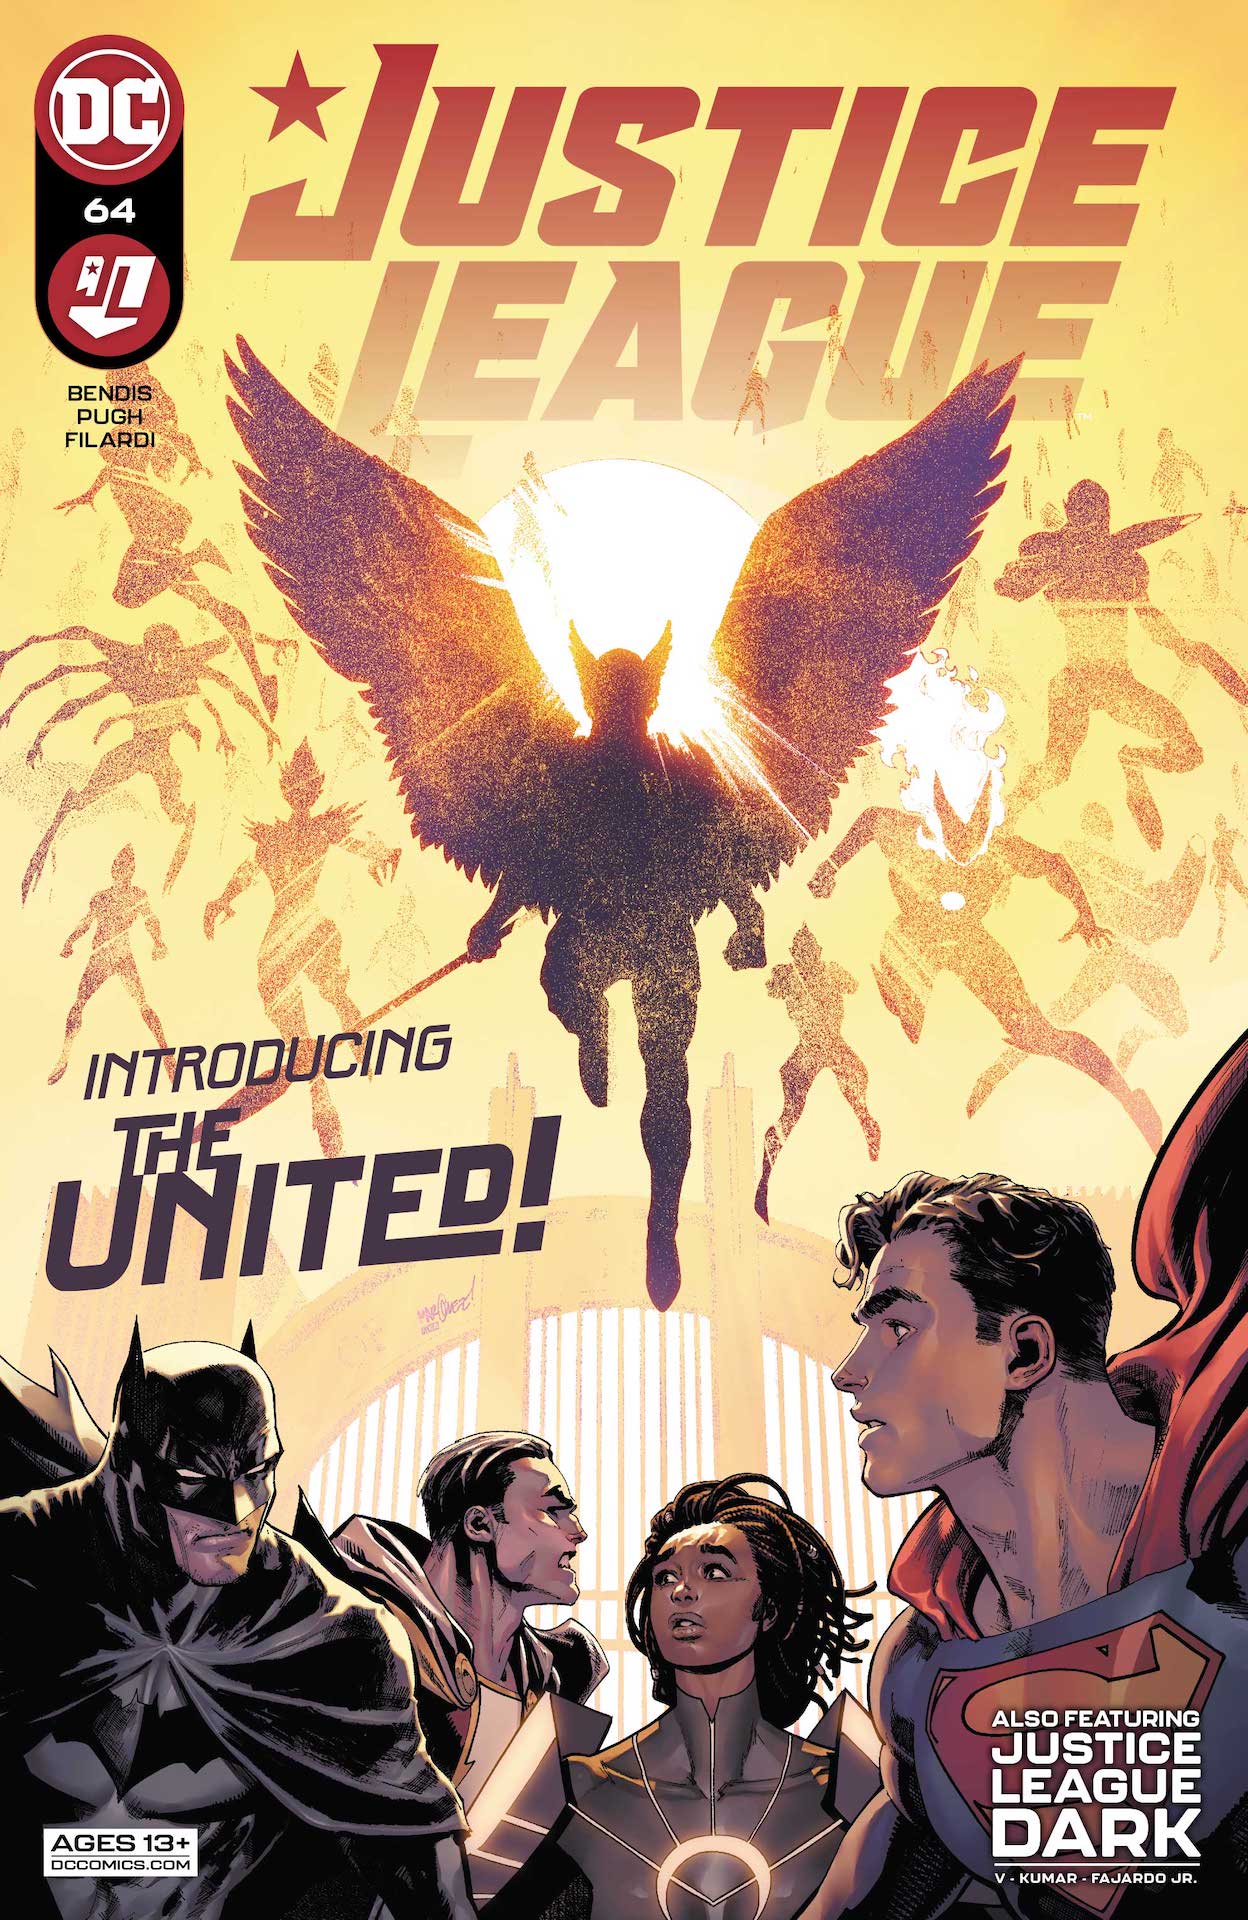 DC Preview: Justice League #64